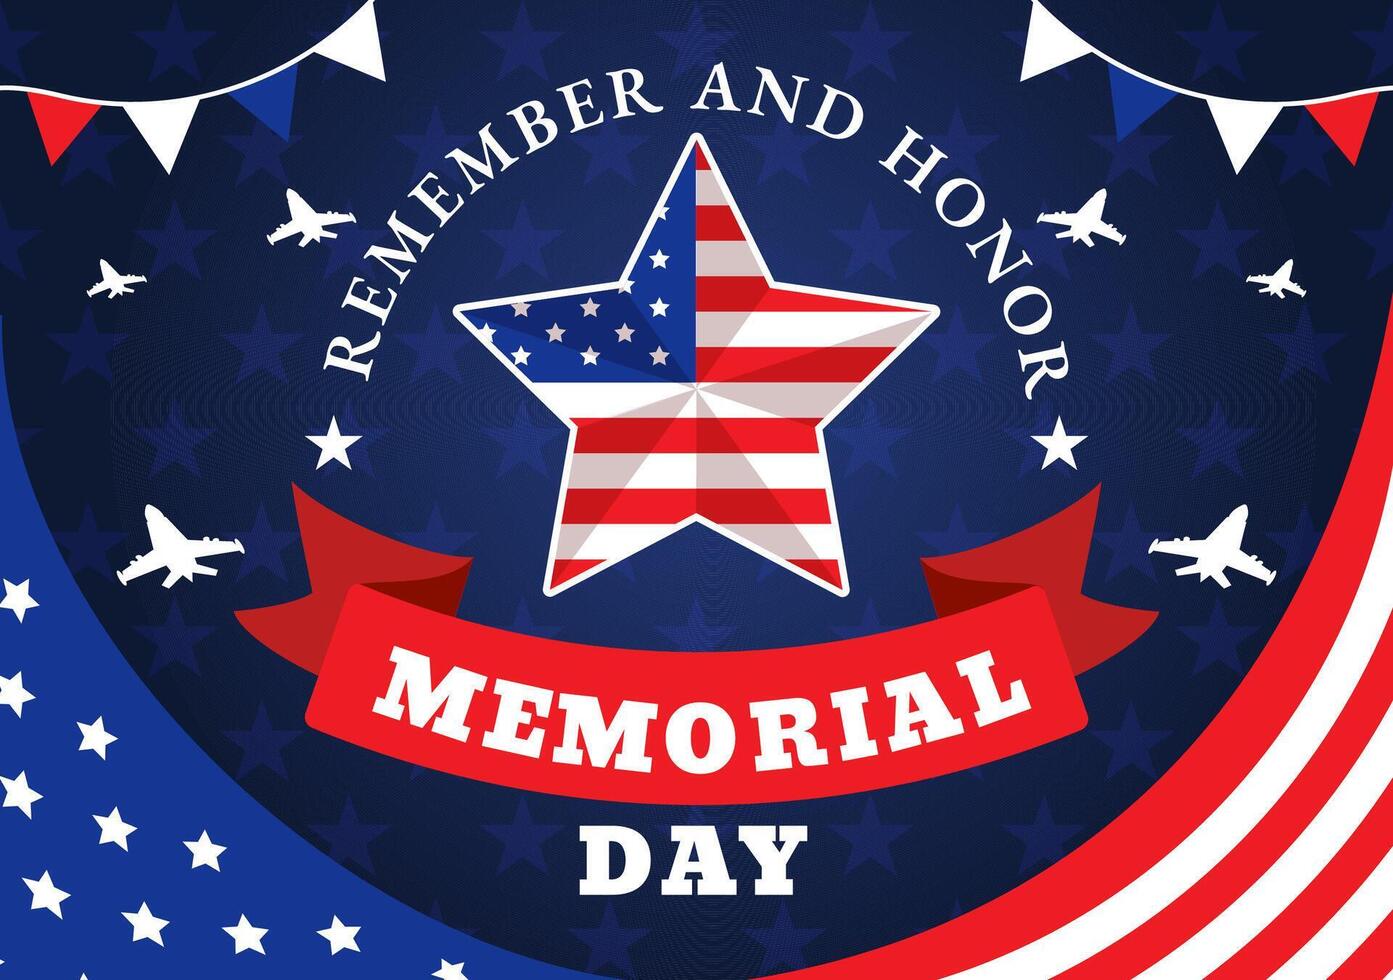 monumento día de recuerda y honor vector ilustración con americano bandera y cinta a meritorio soldado en plano dibujos animados antecedentes